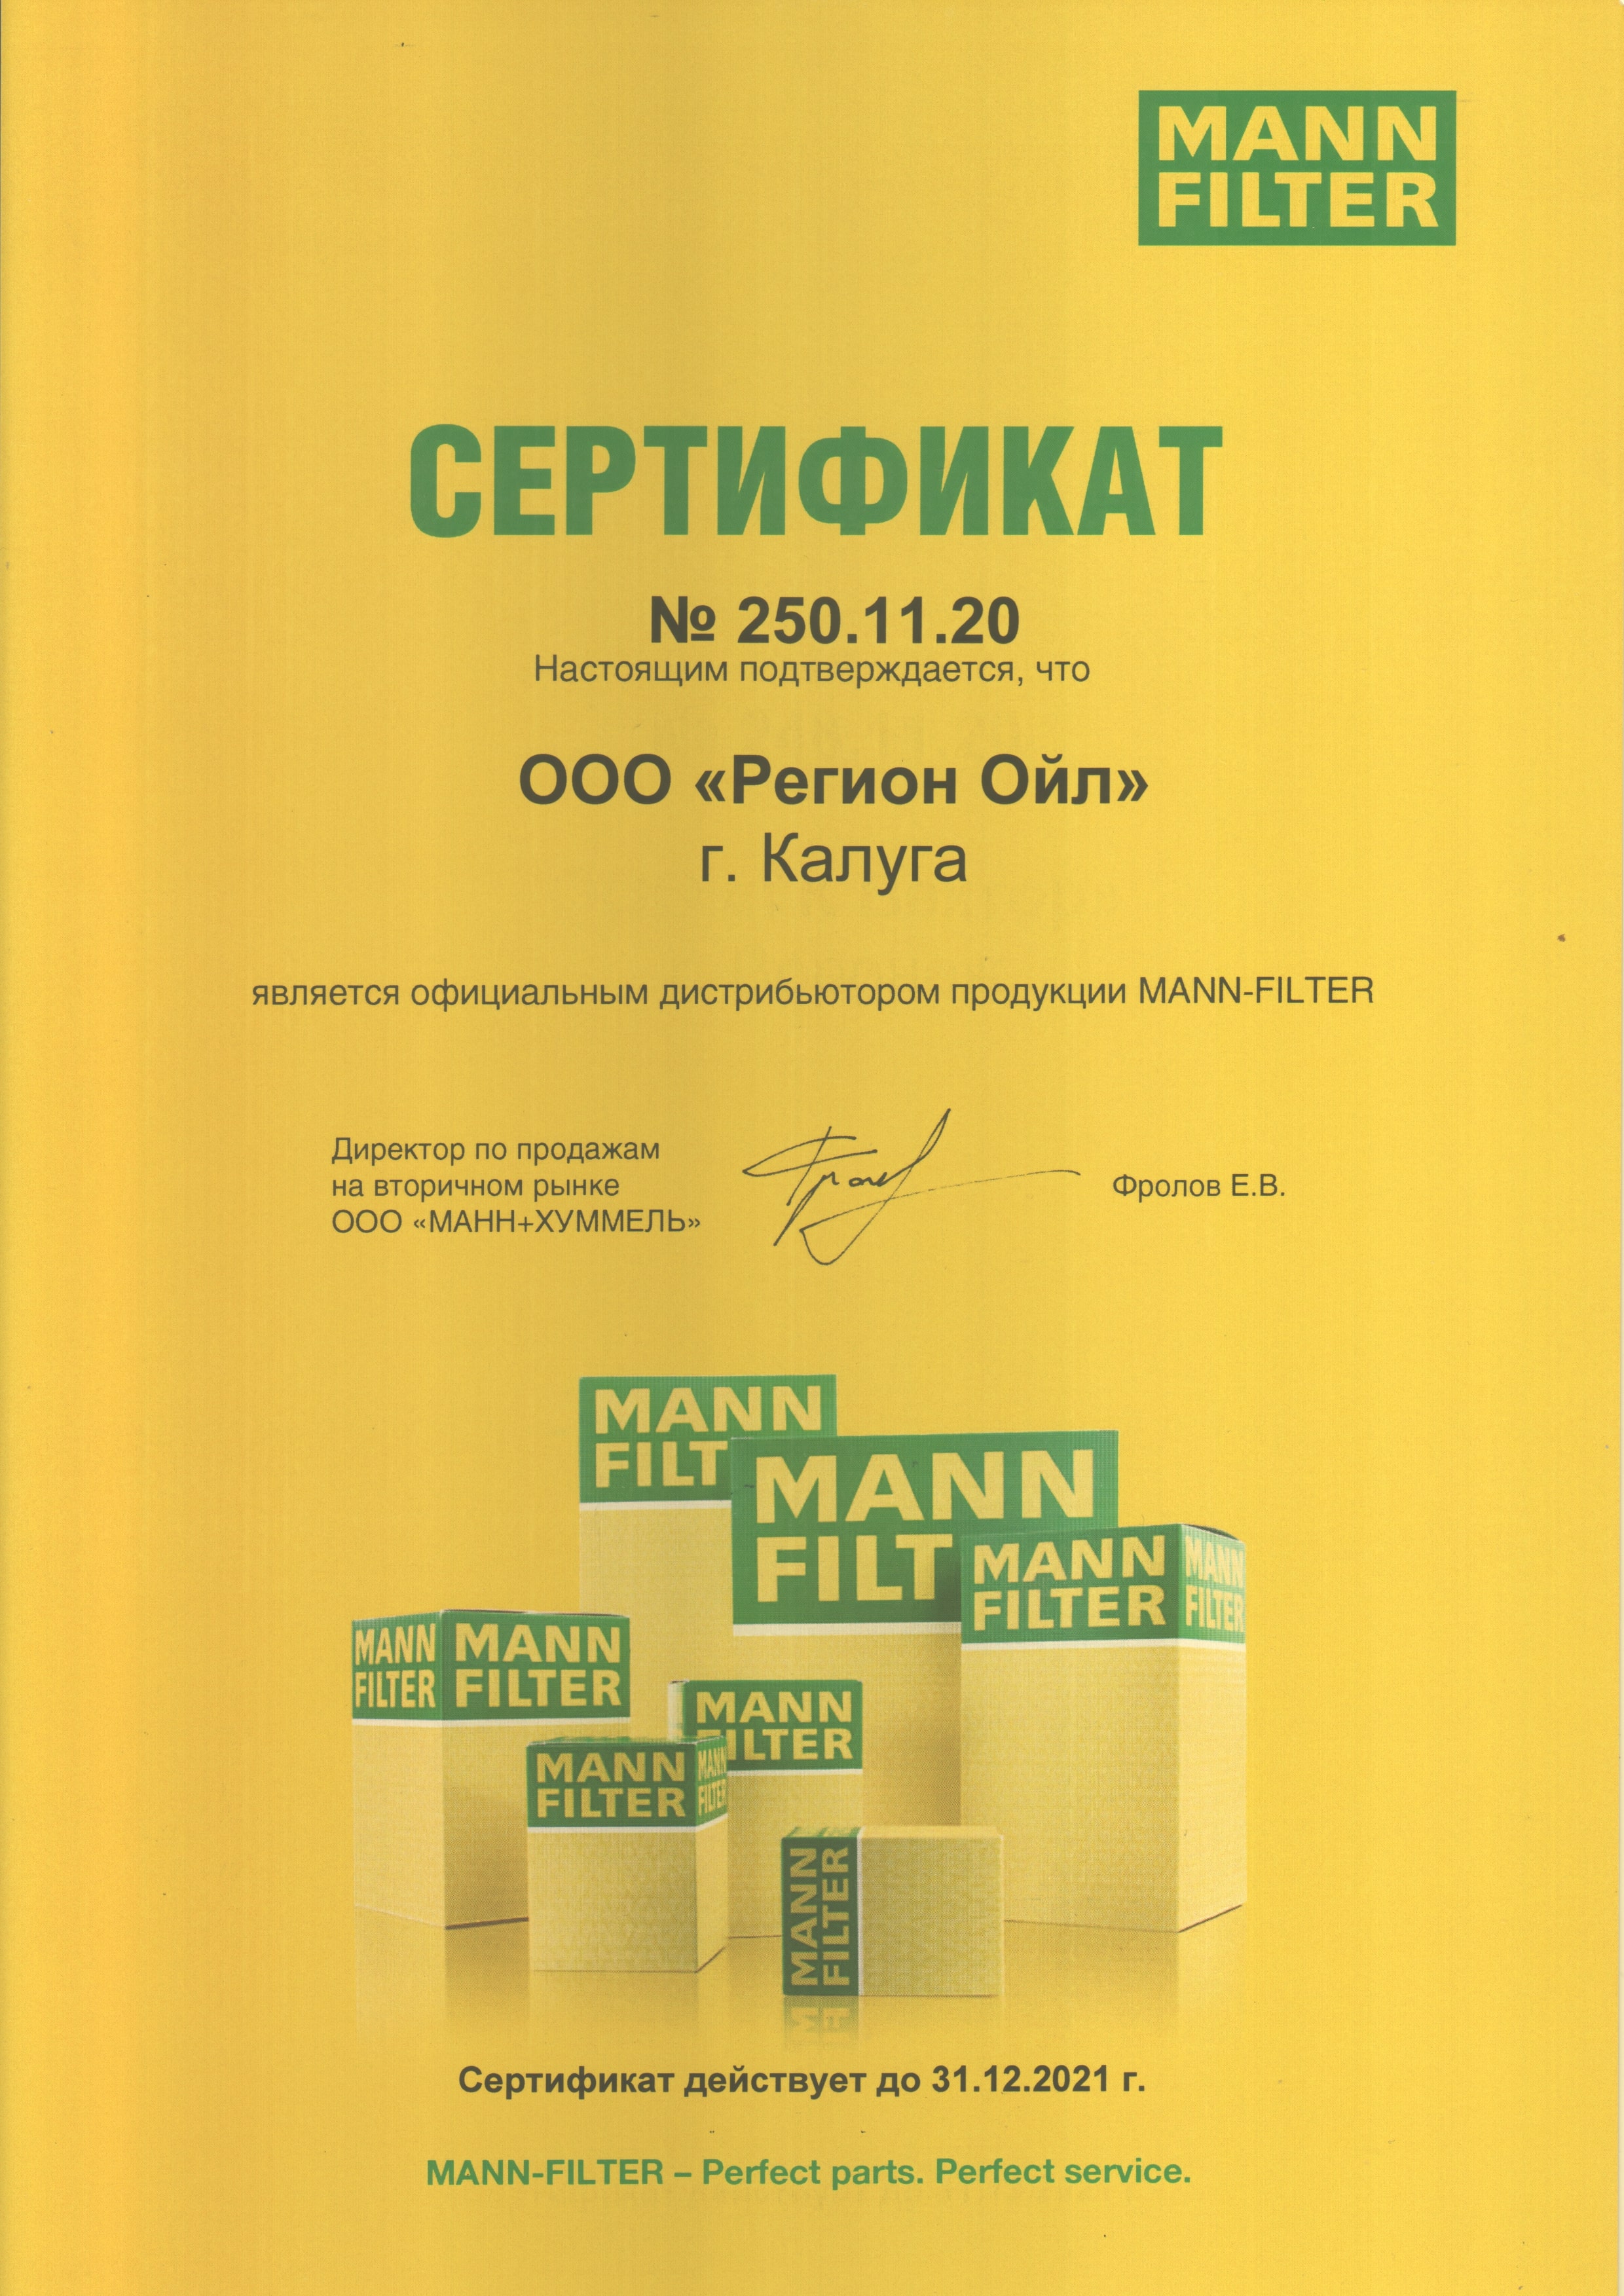 Сертификат дистрибьютора MANN